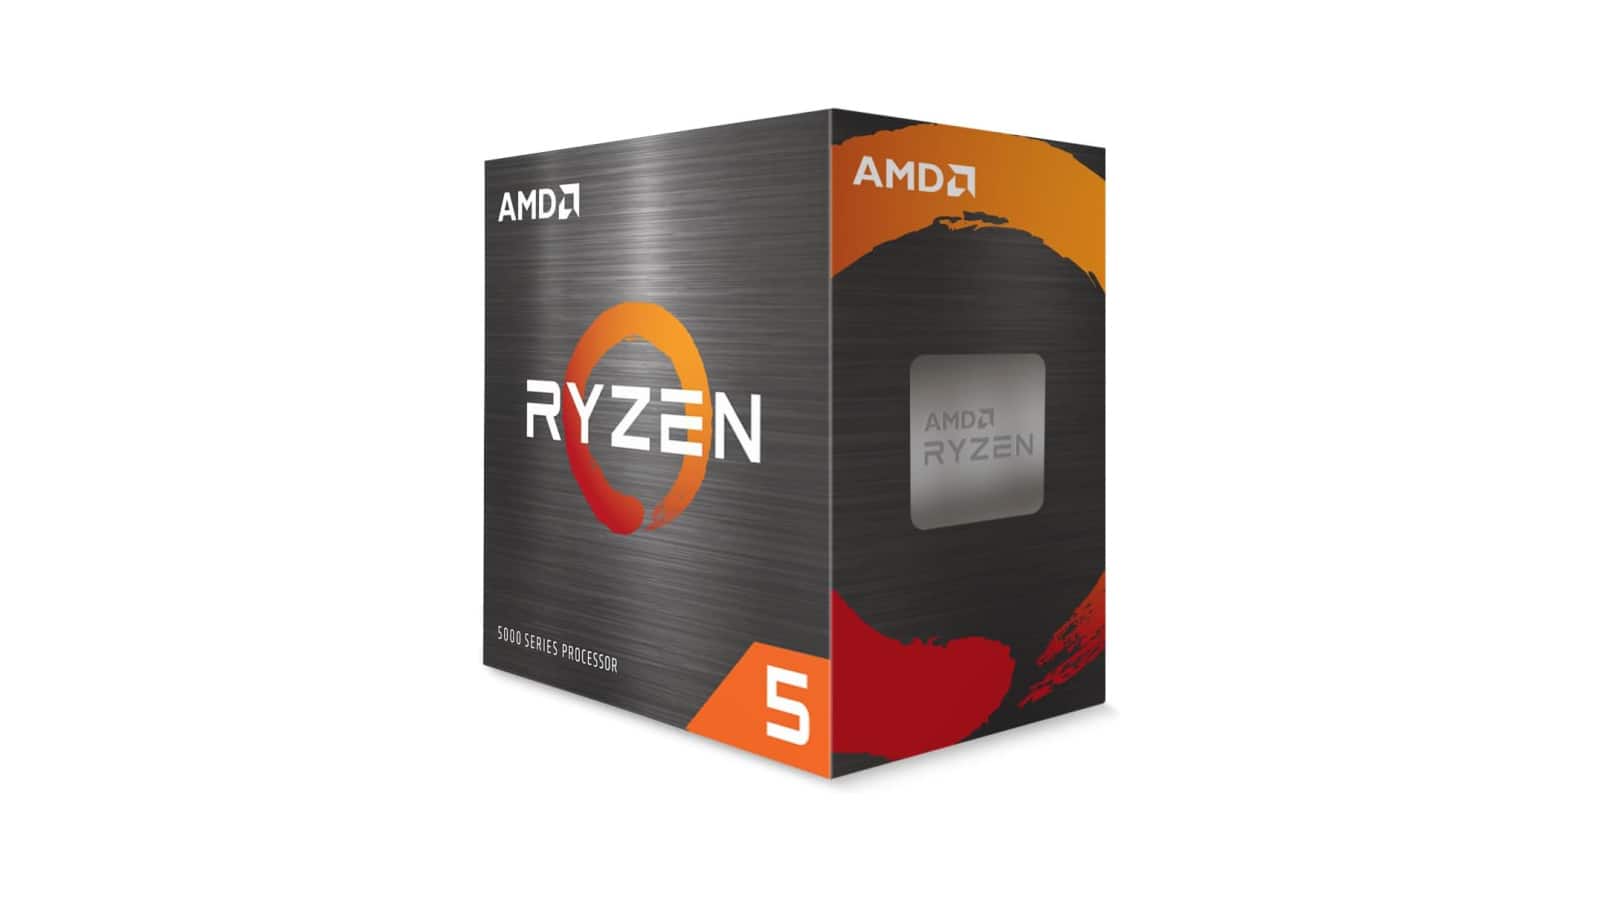 Libere el poder de su PC con la CPU AMD Ryzen 5 5500 por $86.54